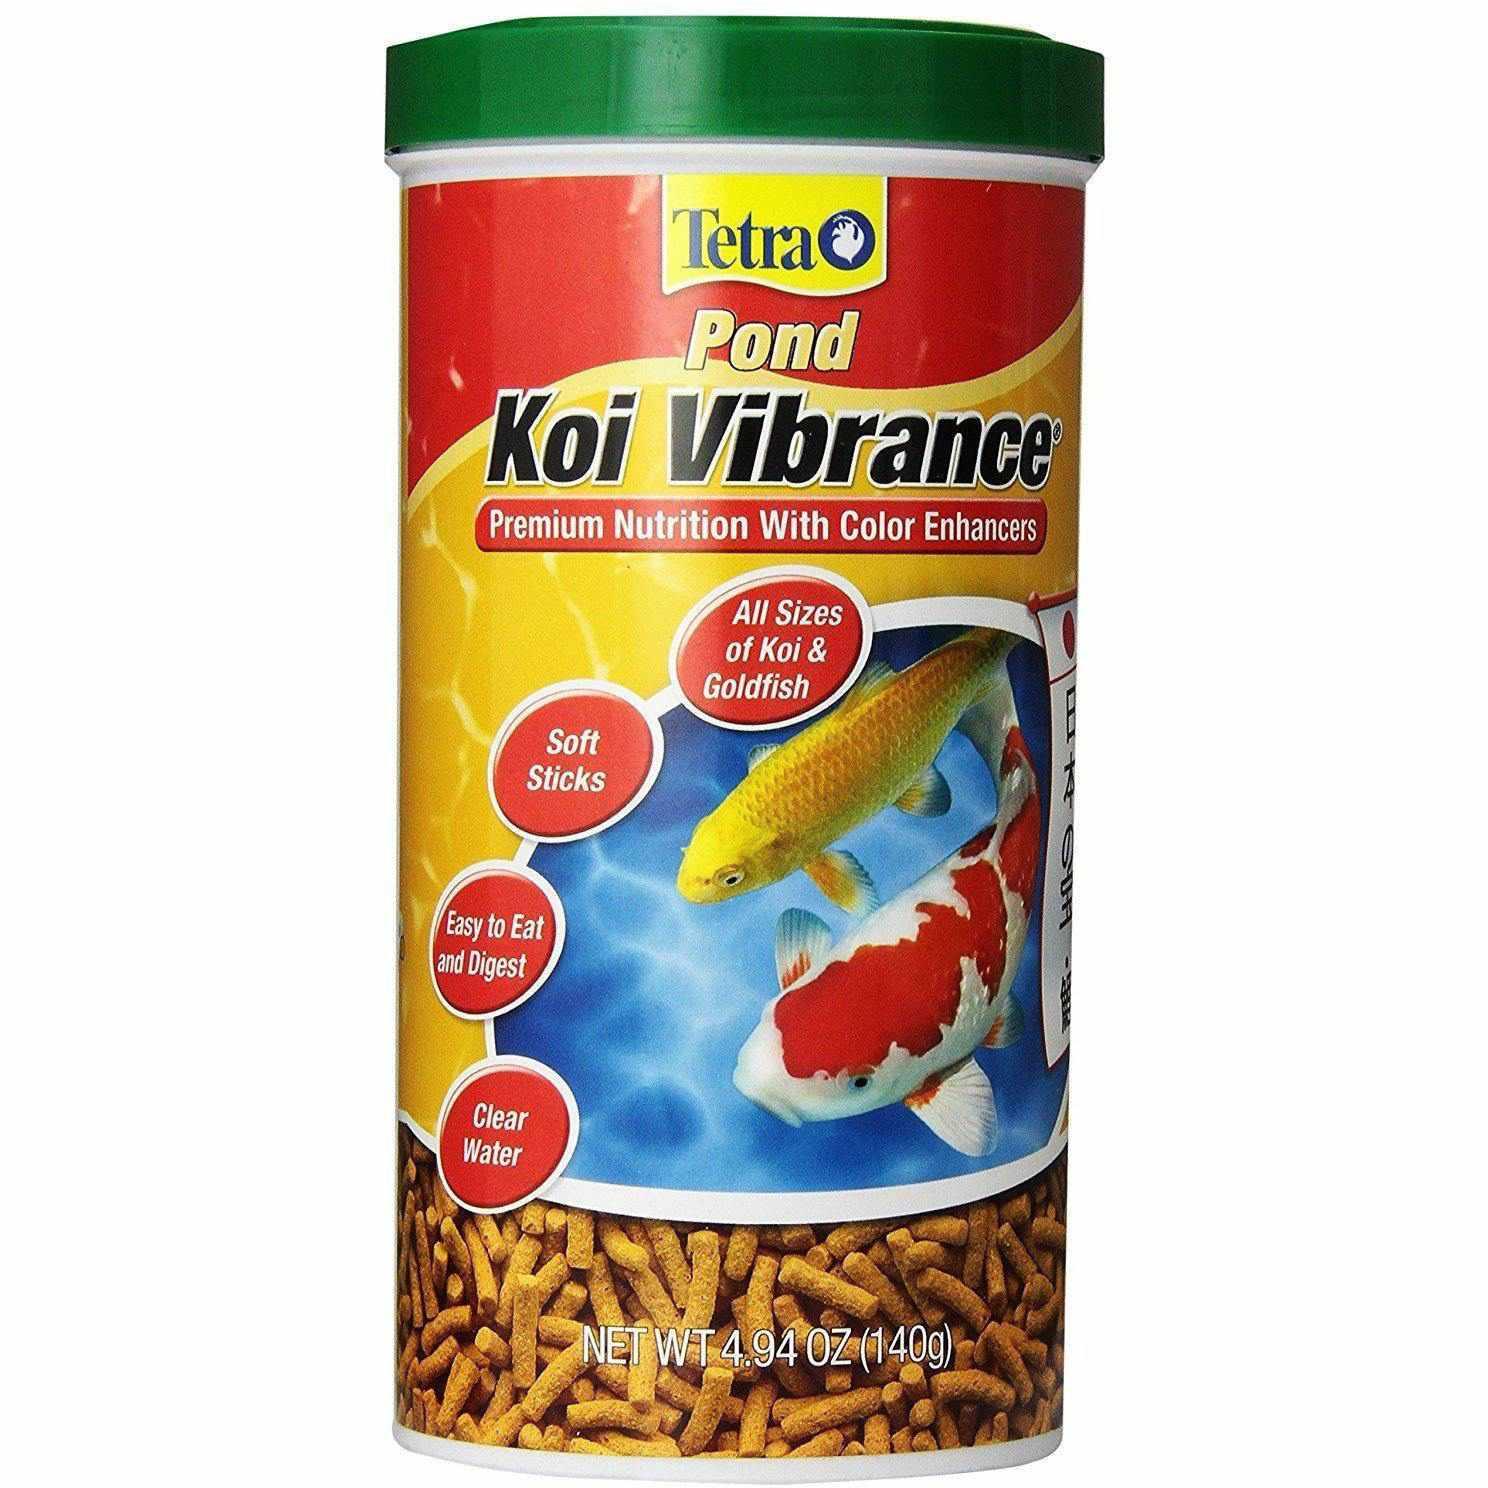 TetraPond Koi Vibrance 5.18 Pounds, Soft Sticks, Floating Pond Food